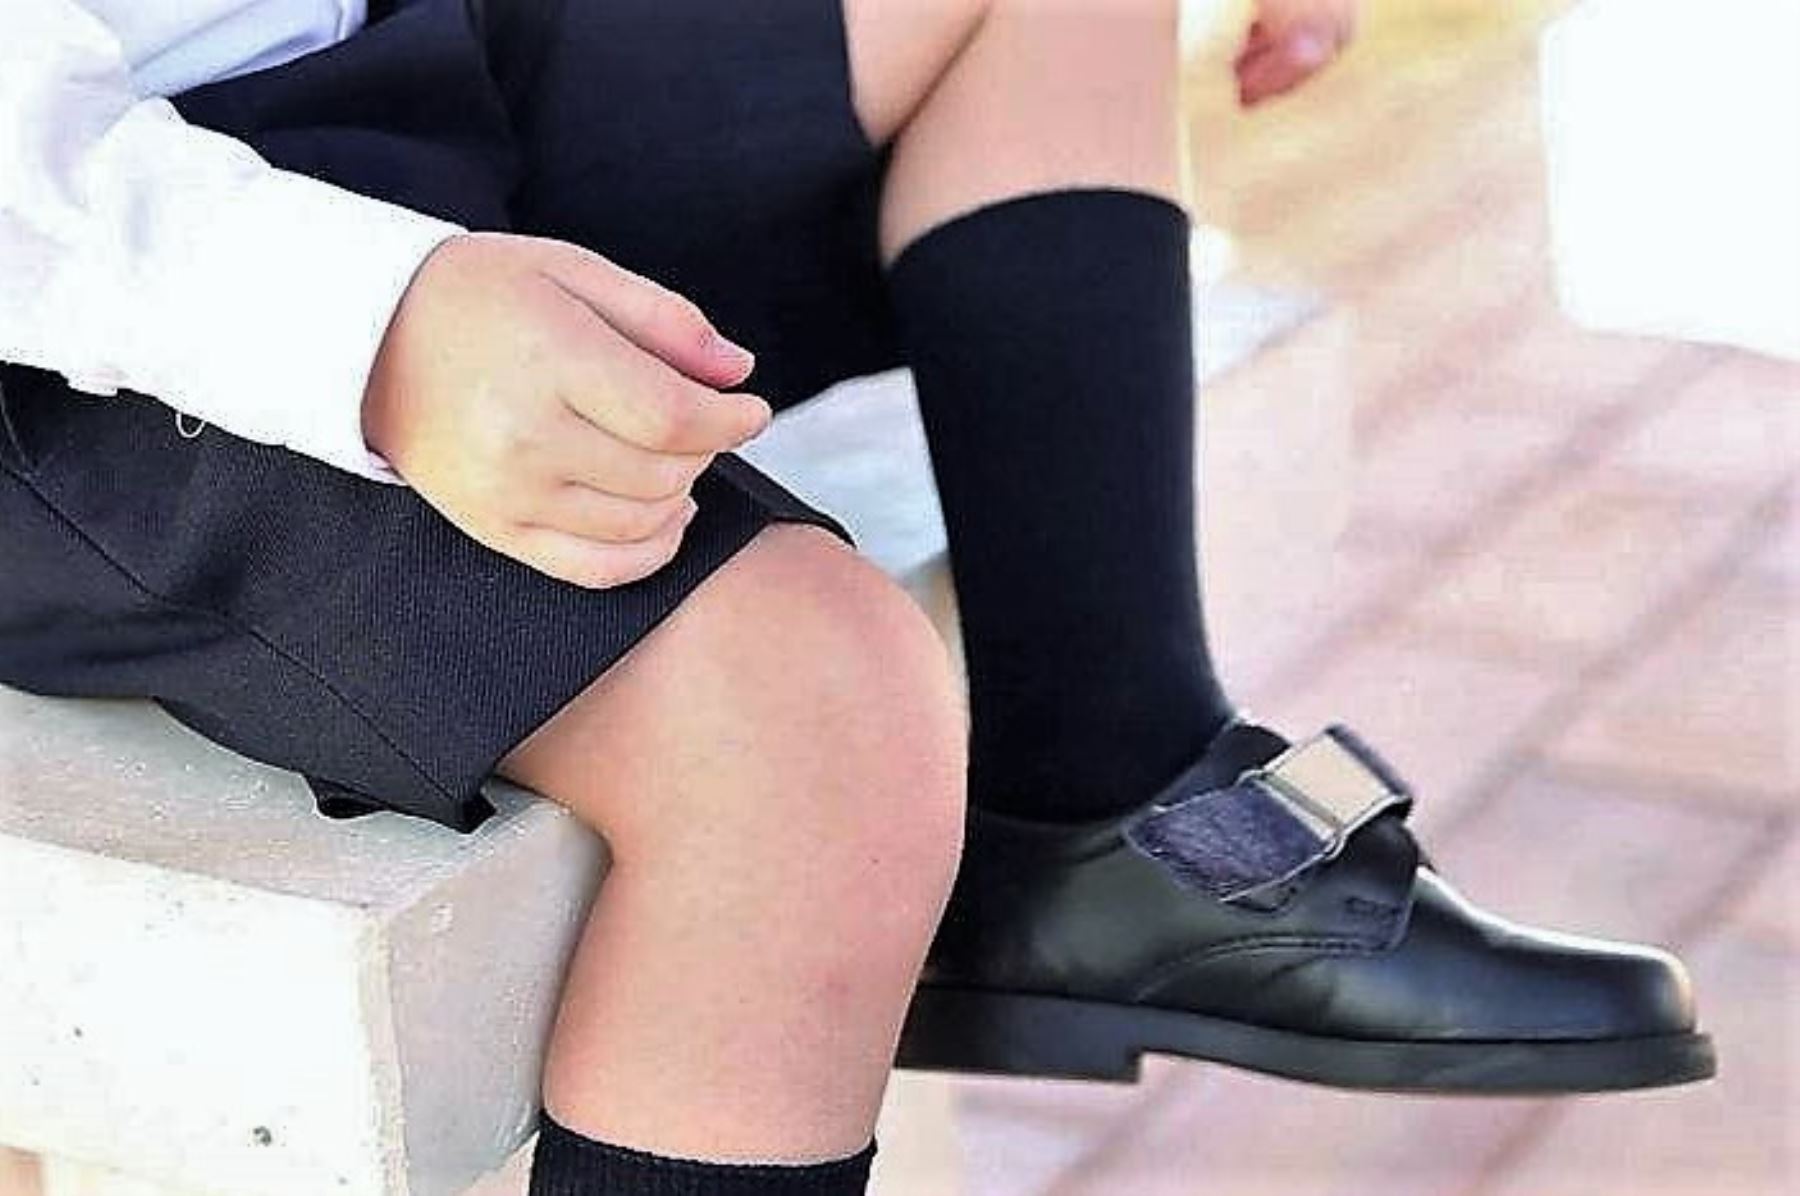 Zapatos escolares deben dejar espacio de 1.5 cm entre pie y el interior del calzado. Foto: ANDINA/Difusión.